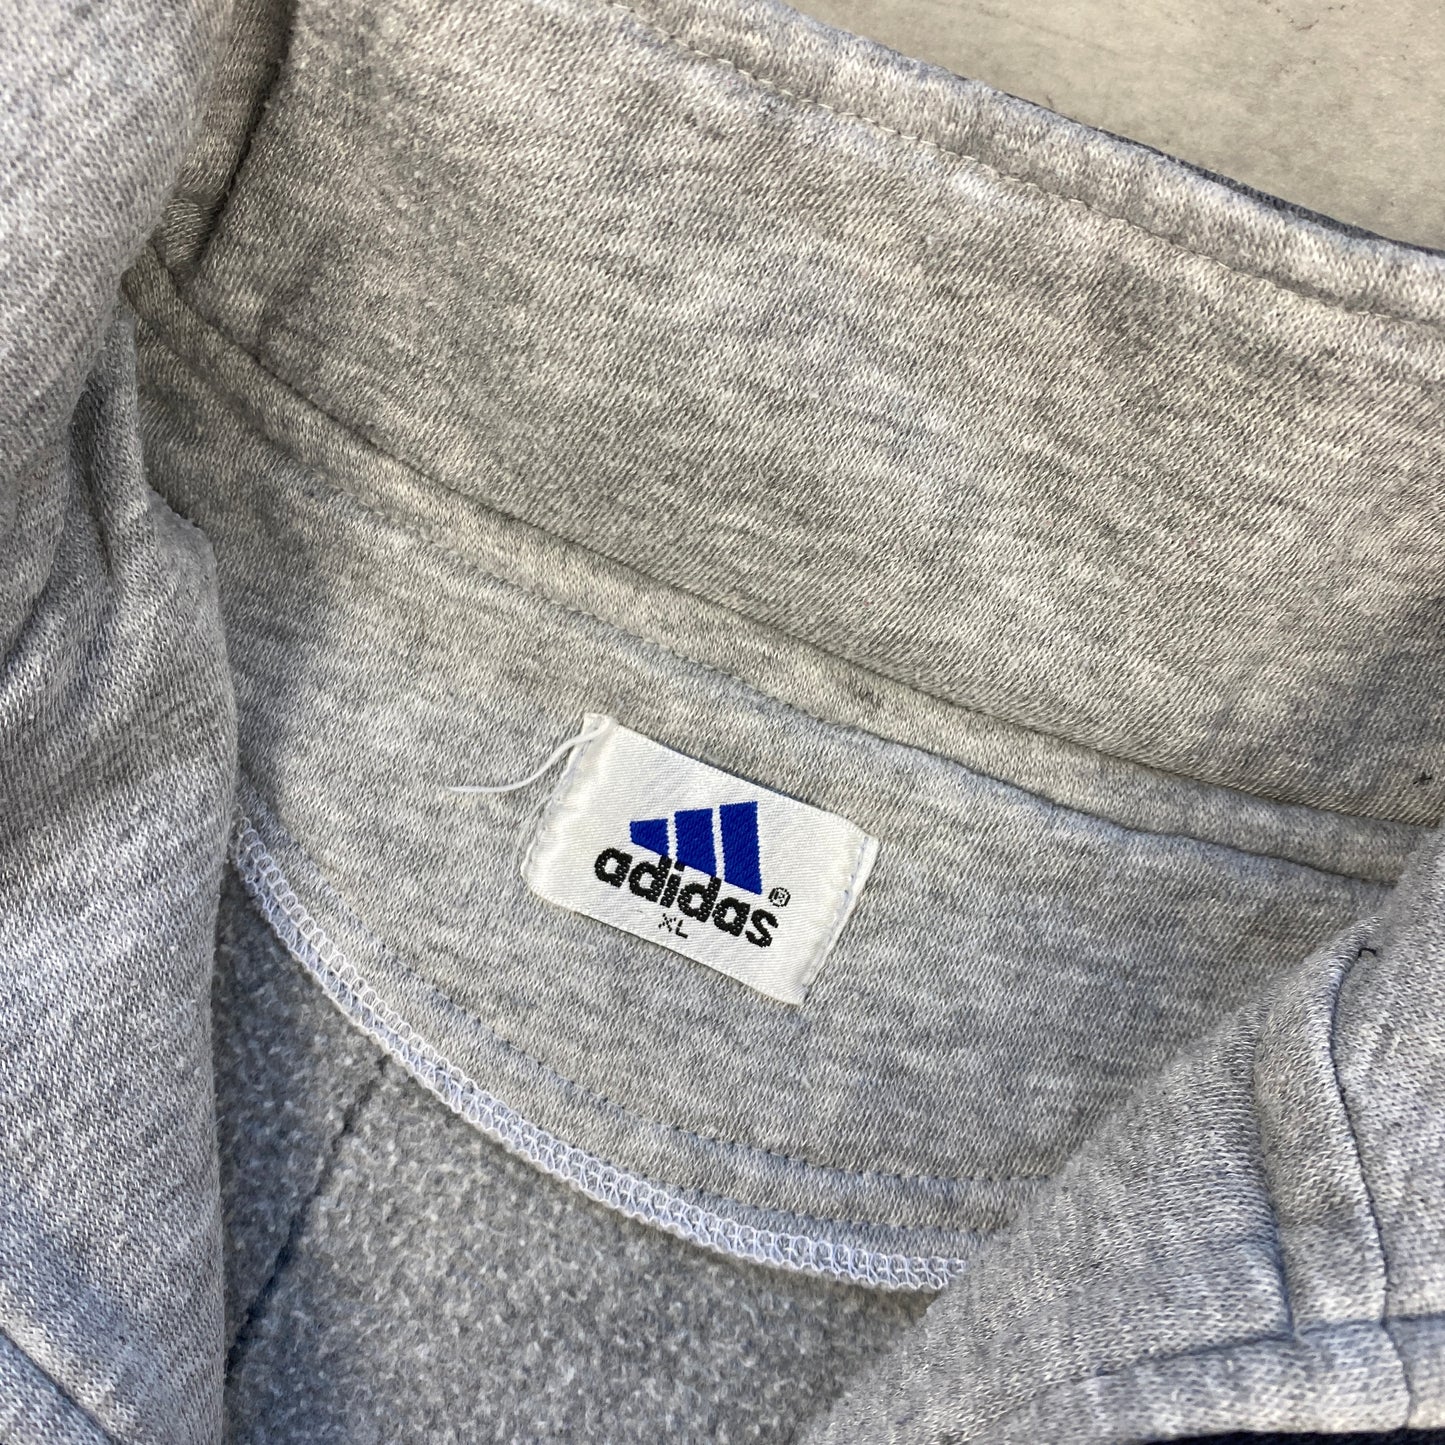 Adidas Equipment 1/4 zip sweater (M)